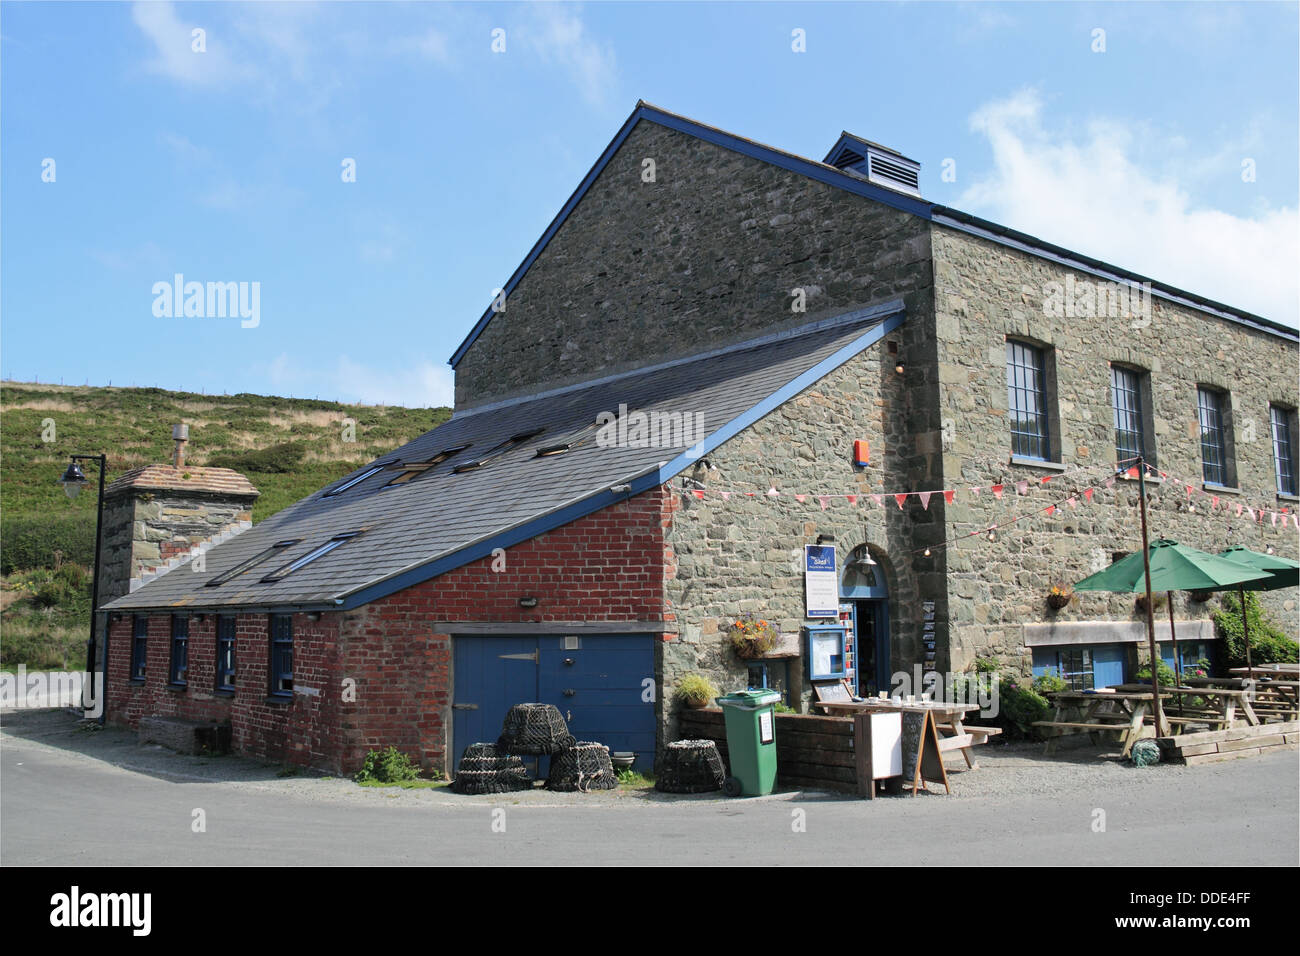 Le shed et poisson Bistro Puce, Porthgain harbour, Pembrokeshire, Pays de Galles, Grande-Bretagne, Royaume-Uni, UK, Europe Banque D'Images